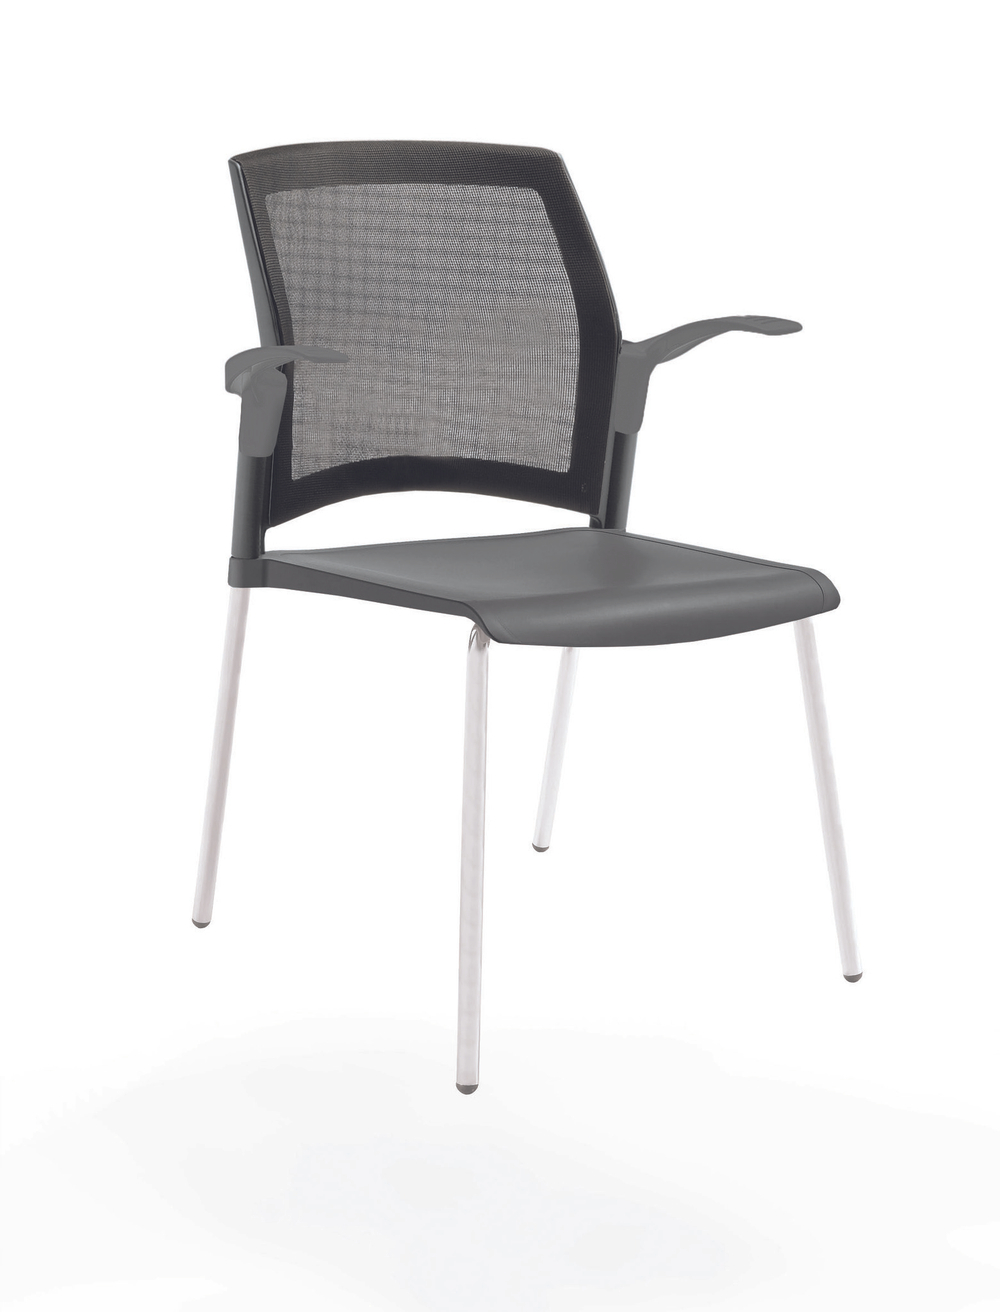 стул Rewind на 4 ногах, каркас белый, пластик серый, спинка-сетка, с открытыми подлокотниками